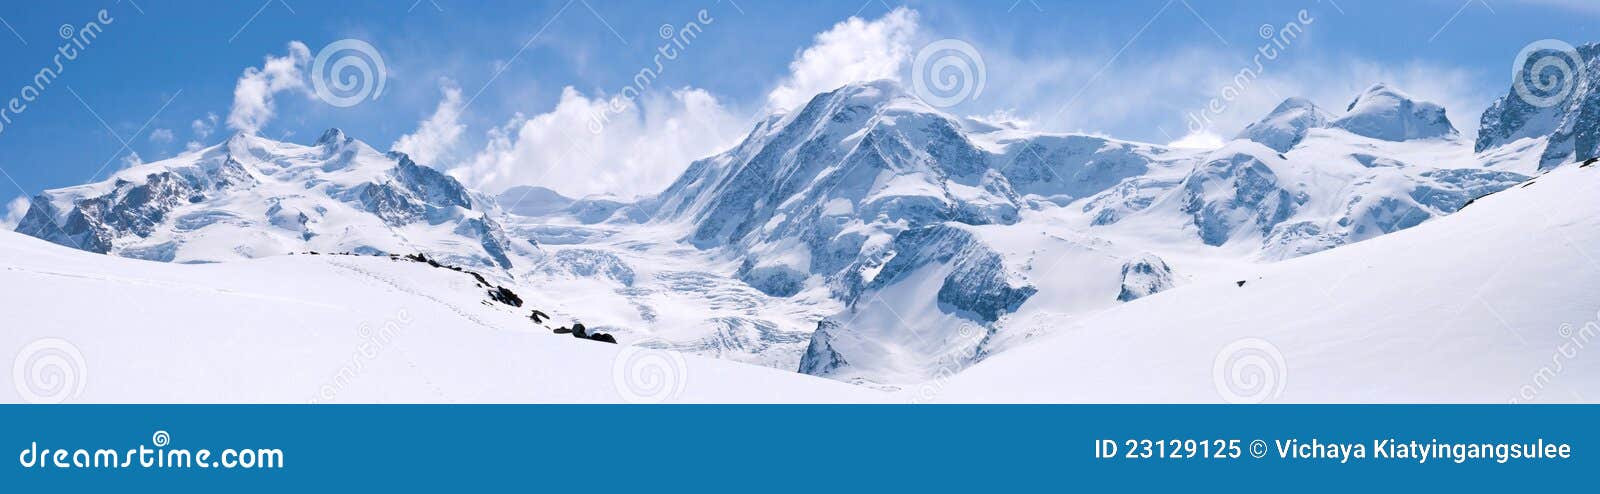 swiss alps mountain range landscape